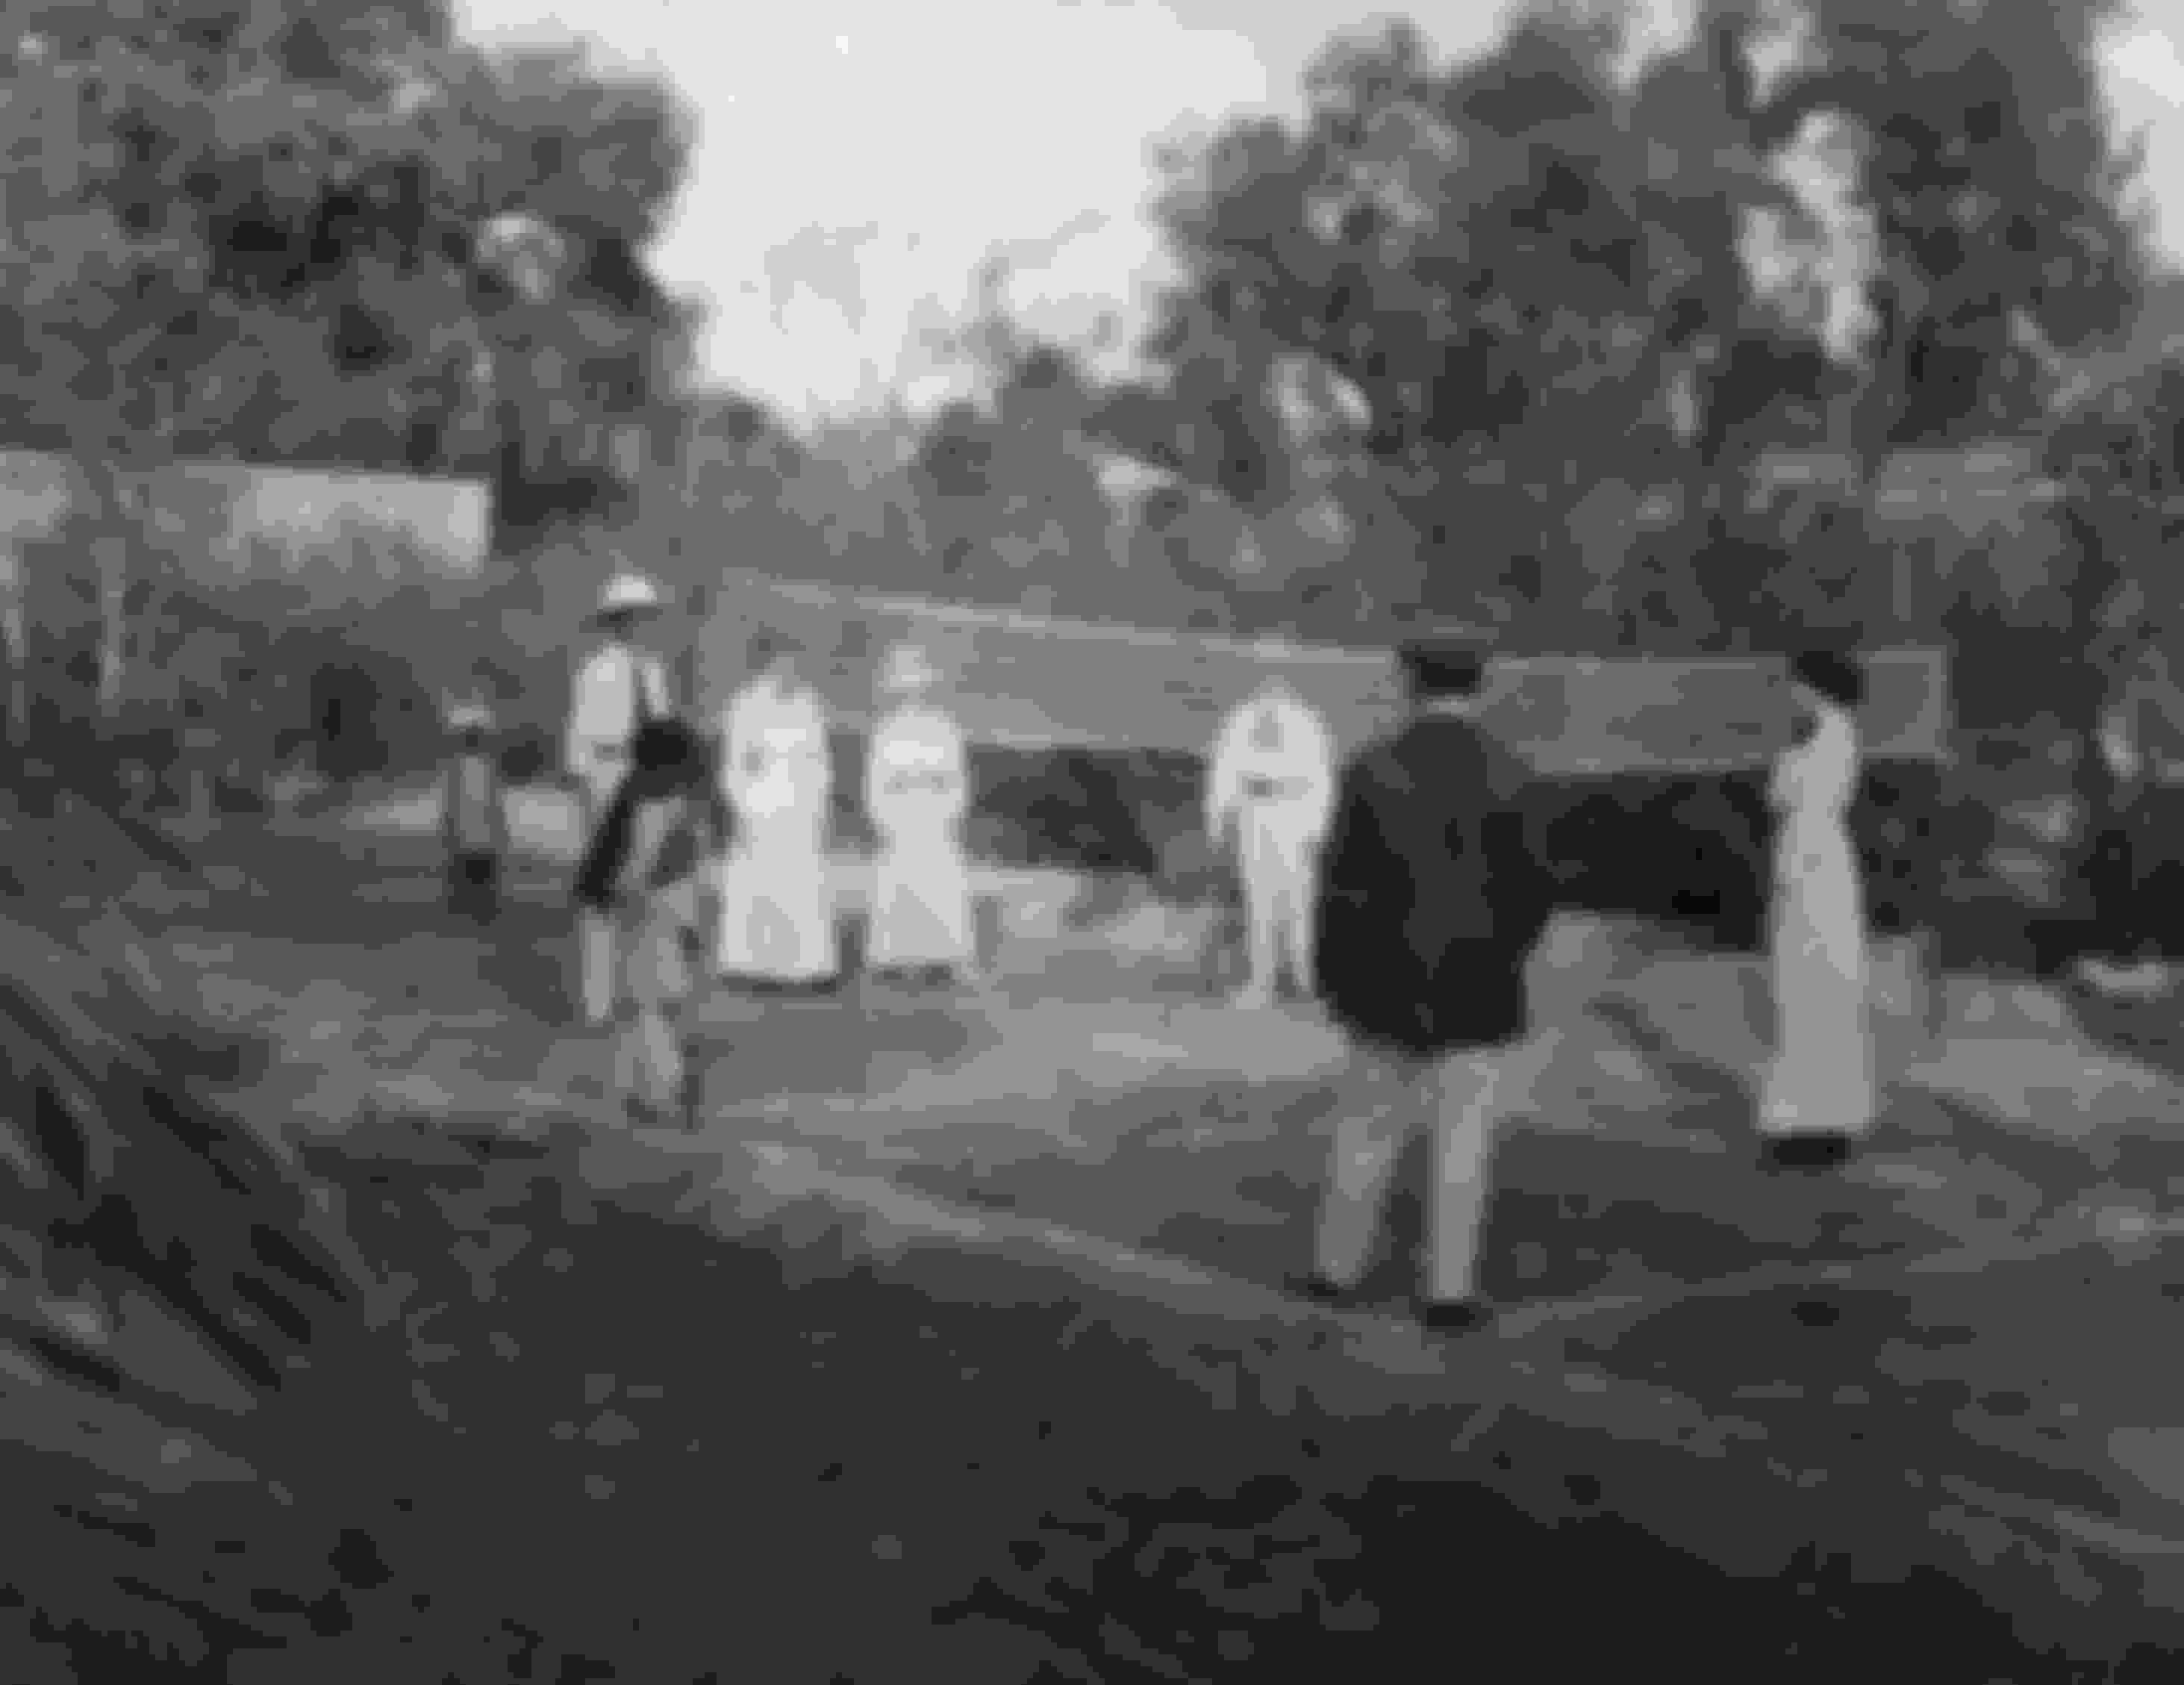 A game of badminton in progress in a garden on Monzong Road, India. circa 1912